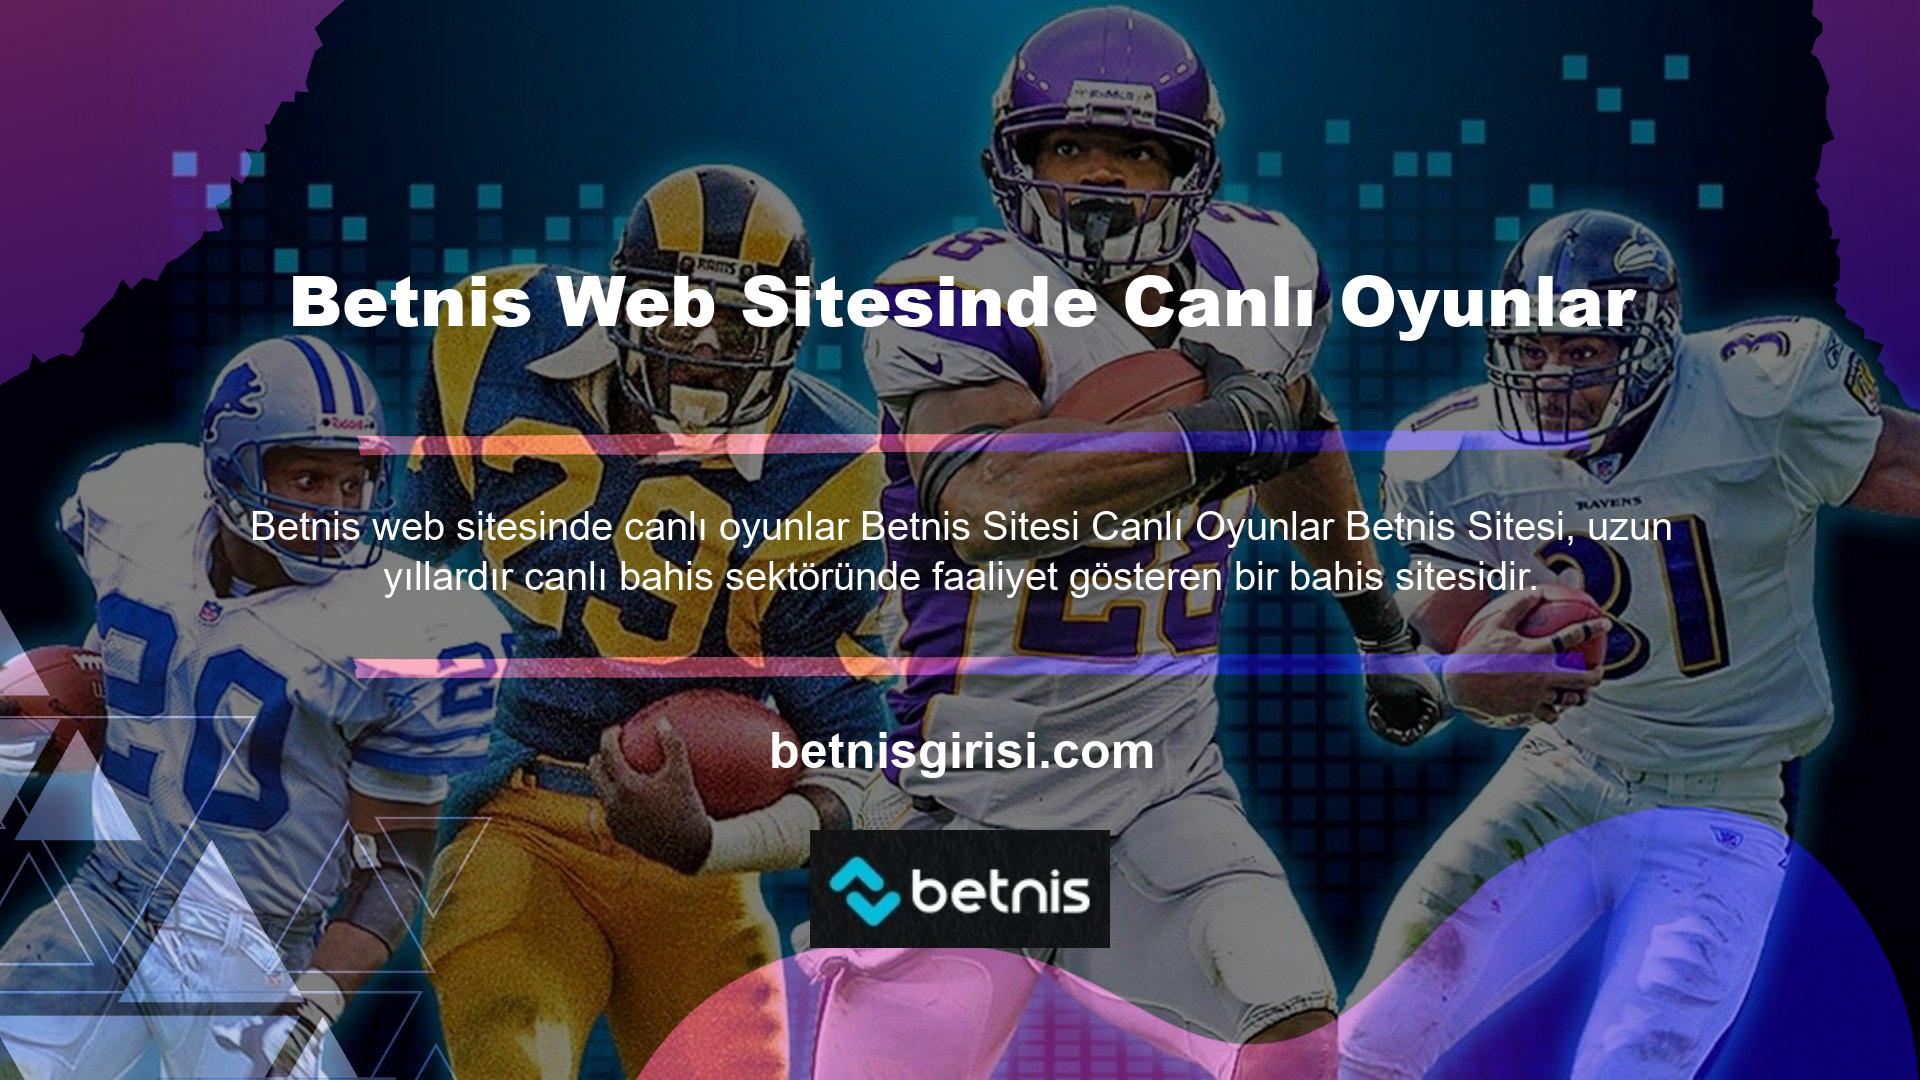 Betnis web sitesi en iyi canlı bahis sitelerinden biridir ve canlı casino ve canlı bahisleriyle tanınmaktadır